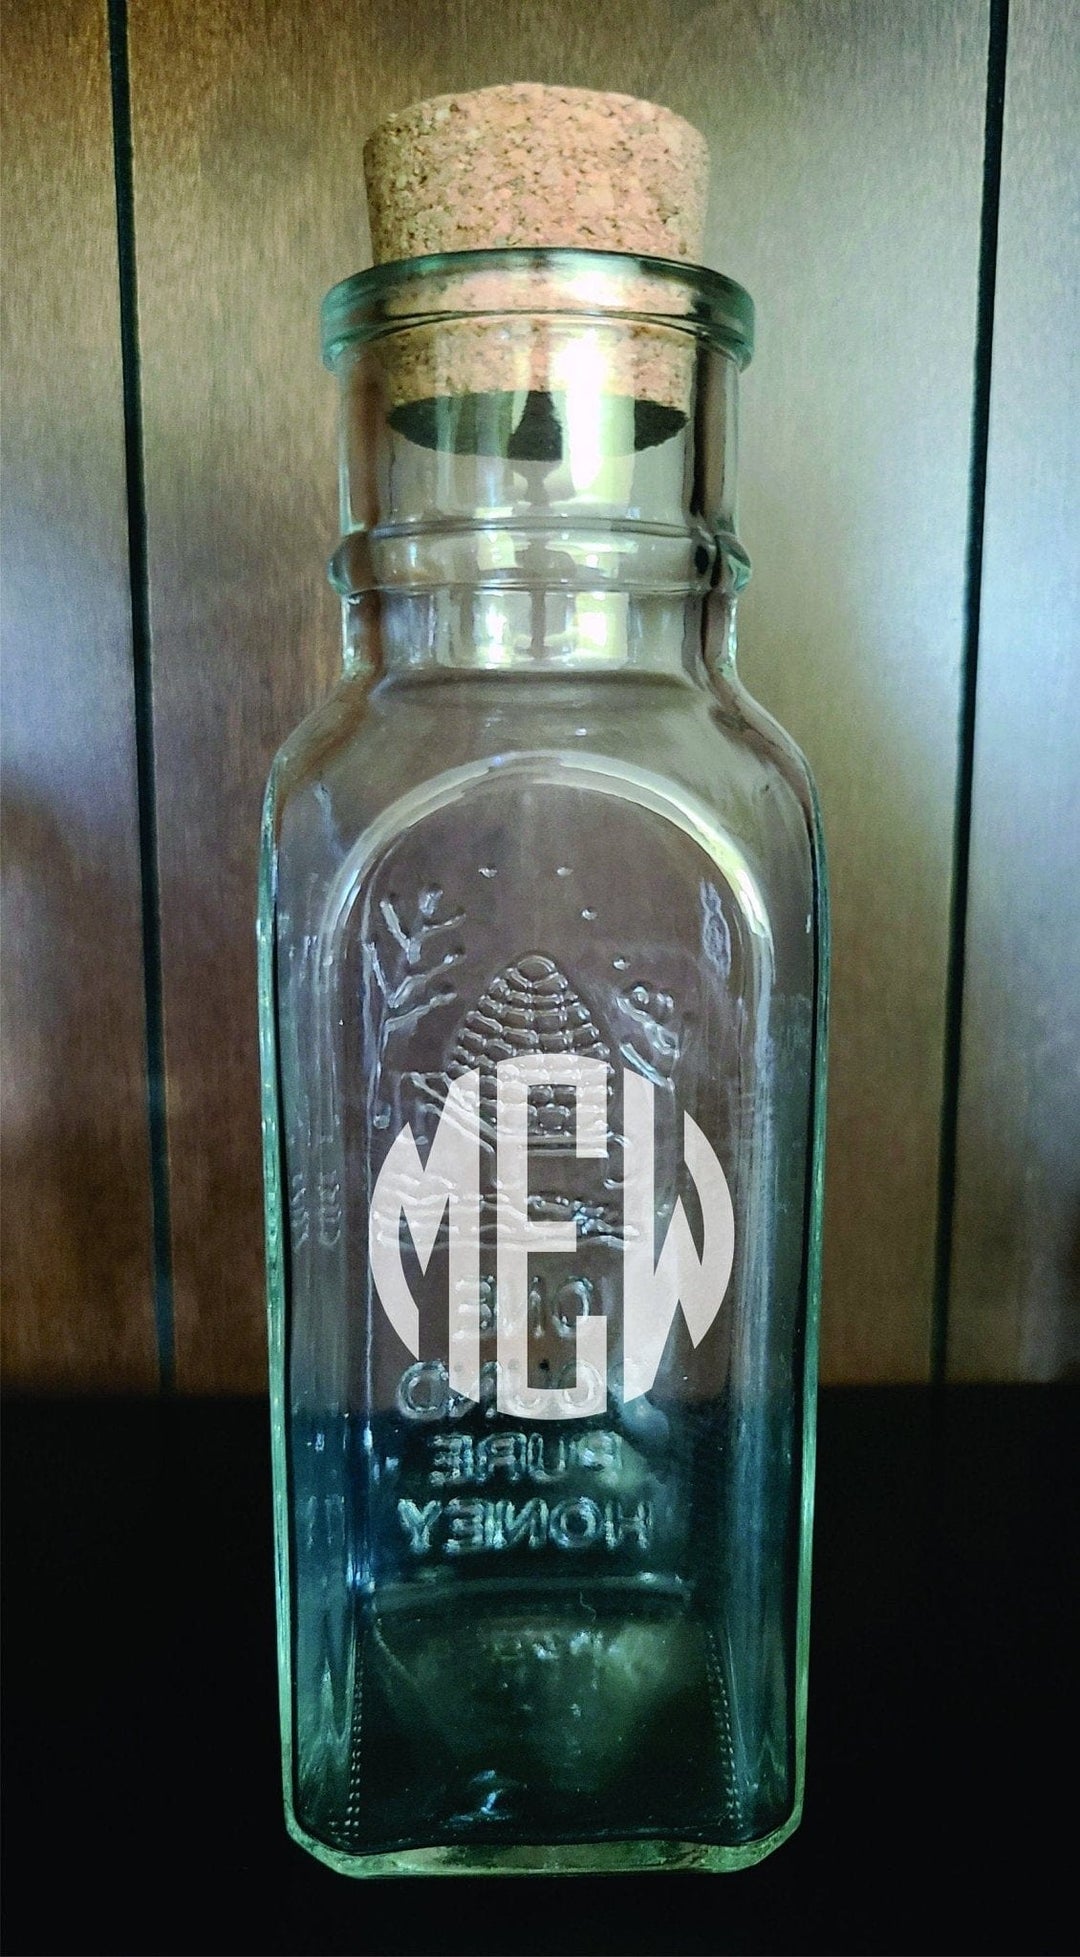 Muth Honey Jar Bottle with Cork Top Monogram